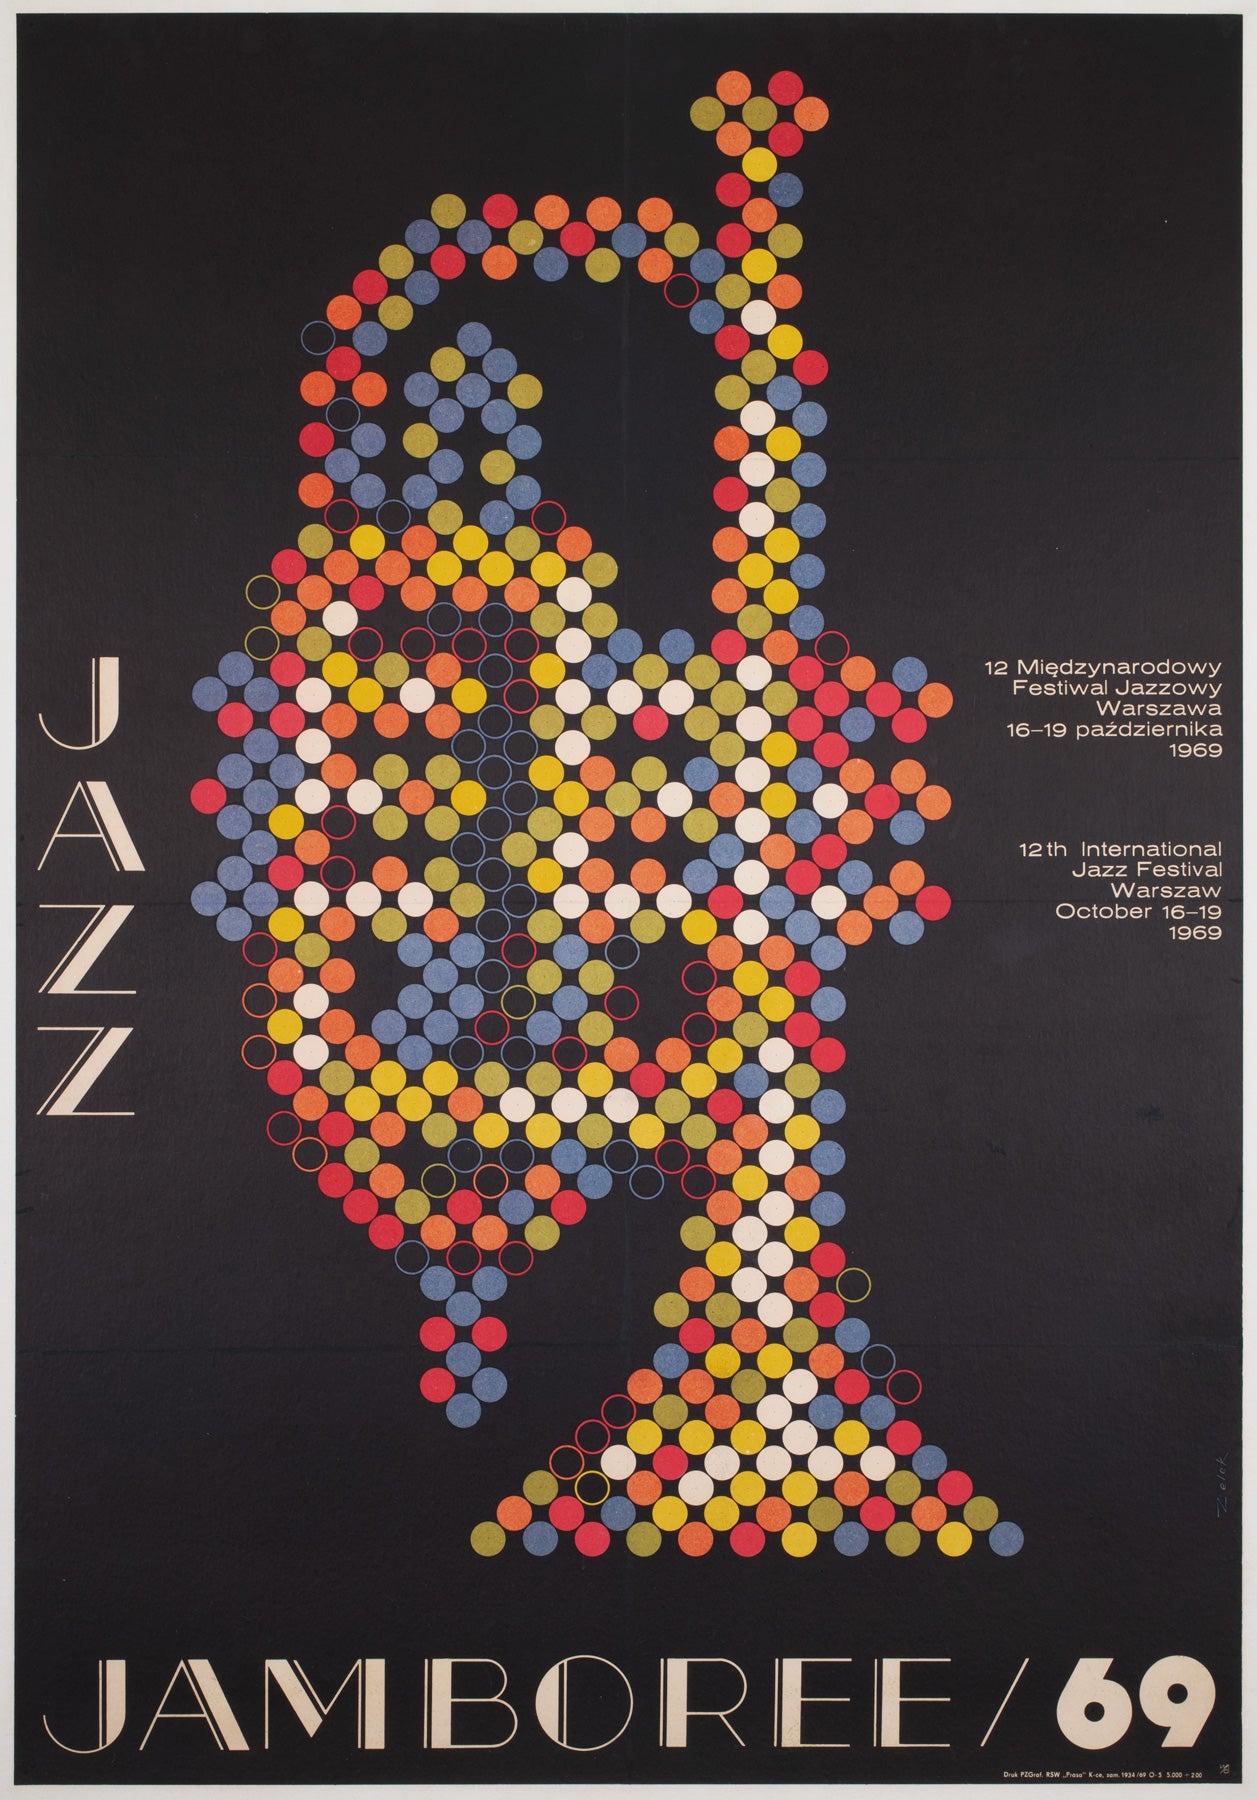 Jazz Jamboree festival 1969 Advertising Poster, Bronislaw Zelek